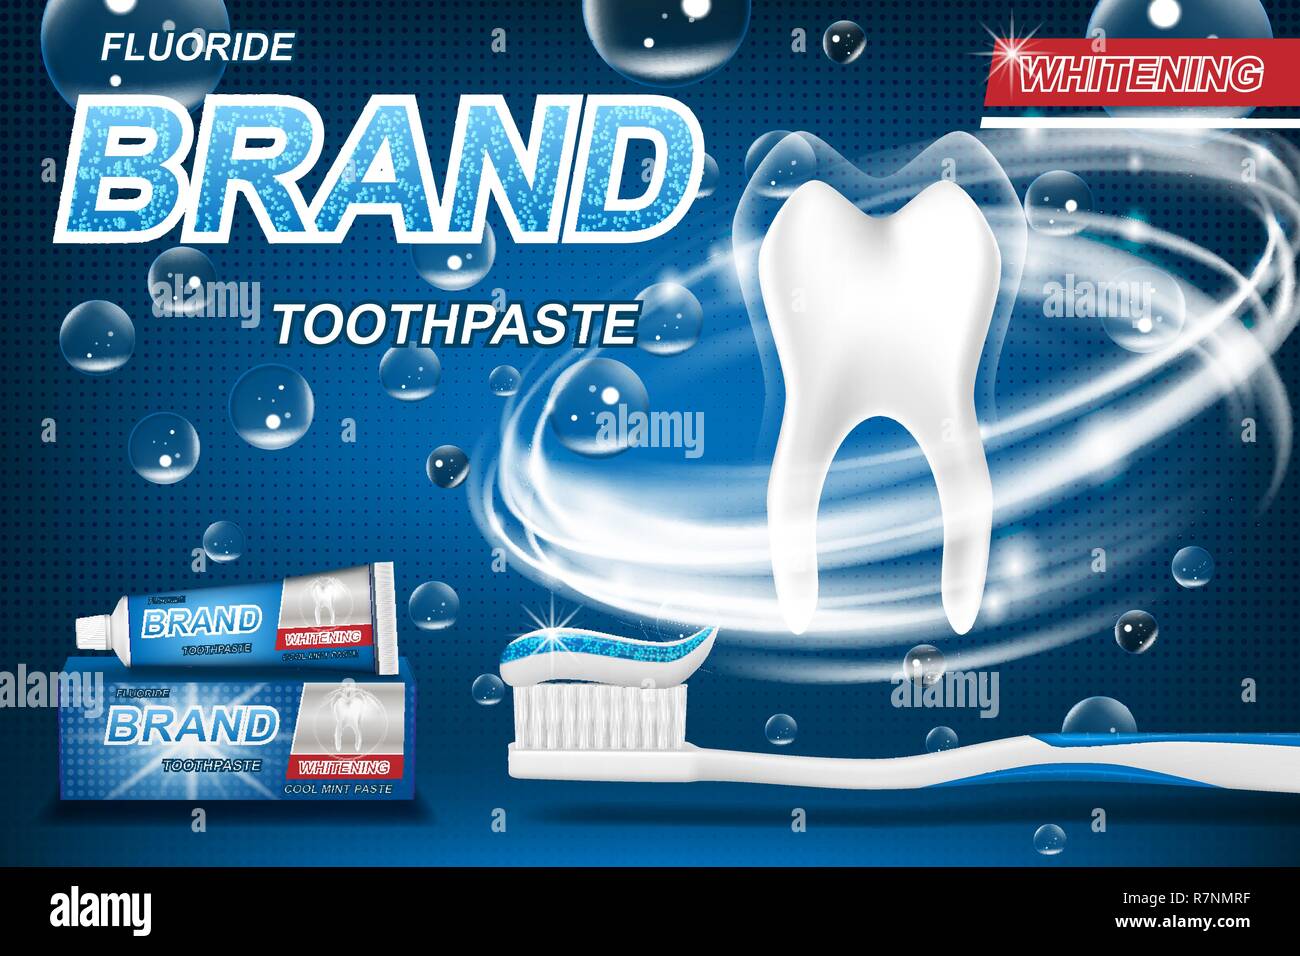 Mint Zahnpasta Konzept, isoliert auf Blau. Zahn Modell Produkt- und Verpackungsdesign für Zahnpasta Plakat oder Werbung. 3D-Vektor Illustration. Stock Vektor